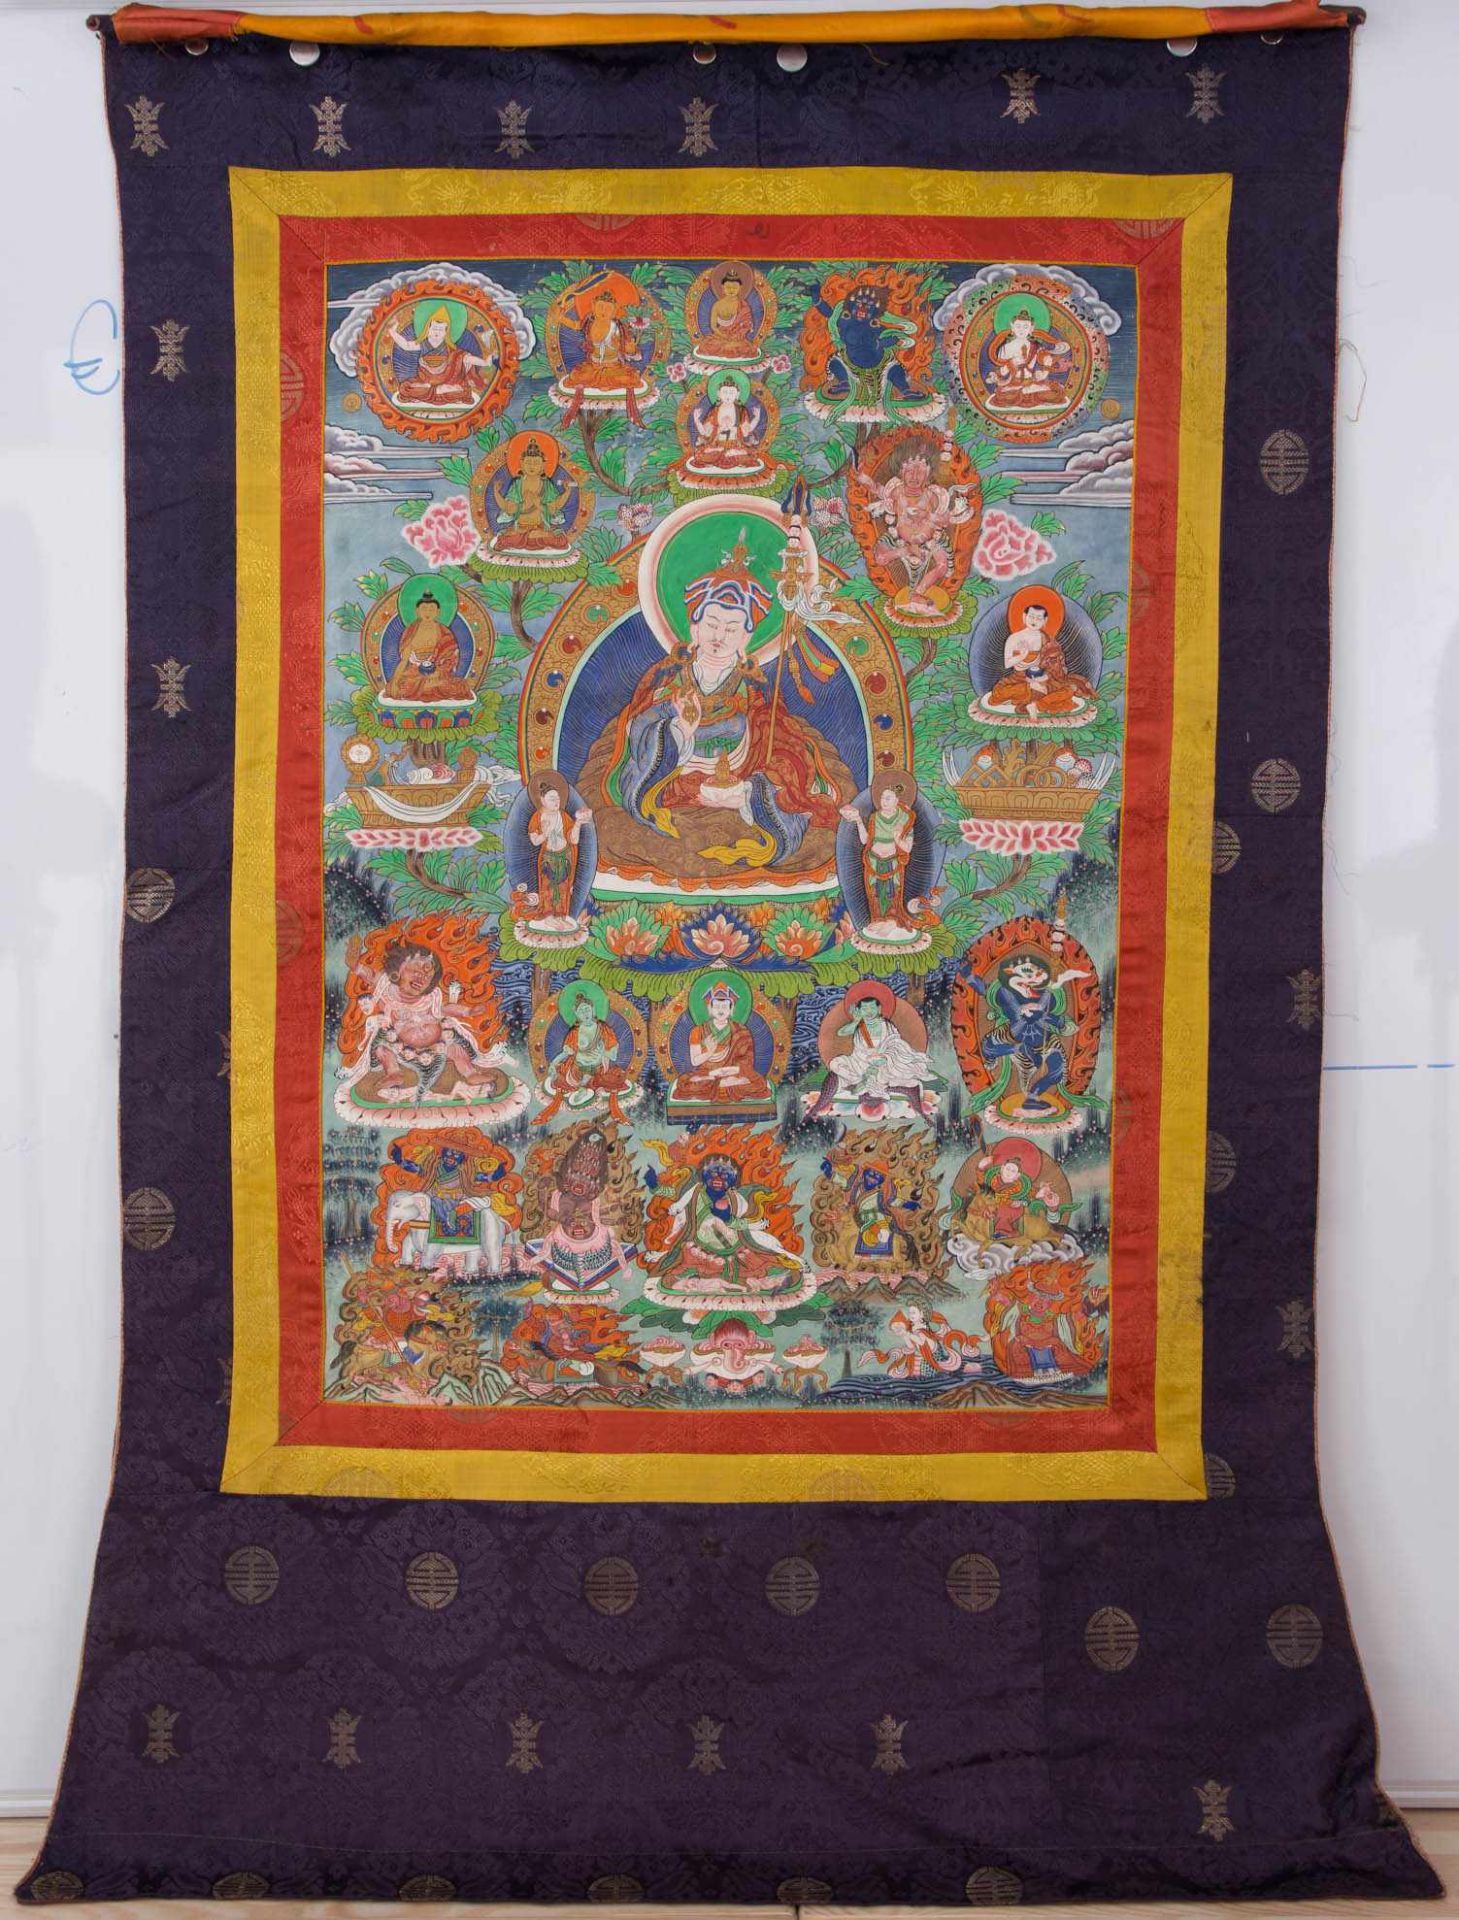 FARBENFROHER THANGKA AUS LEINEN UND SEIDE,Tibet 19.Jahrhundert. Thangka mit kräftgen Farben und